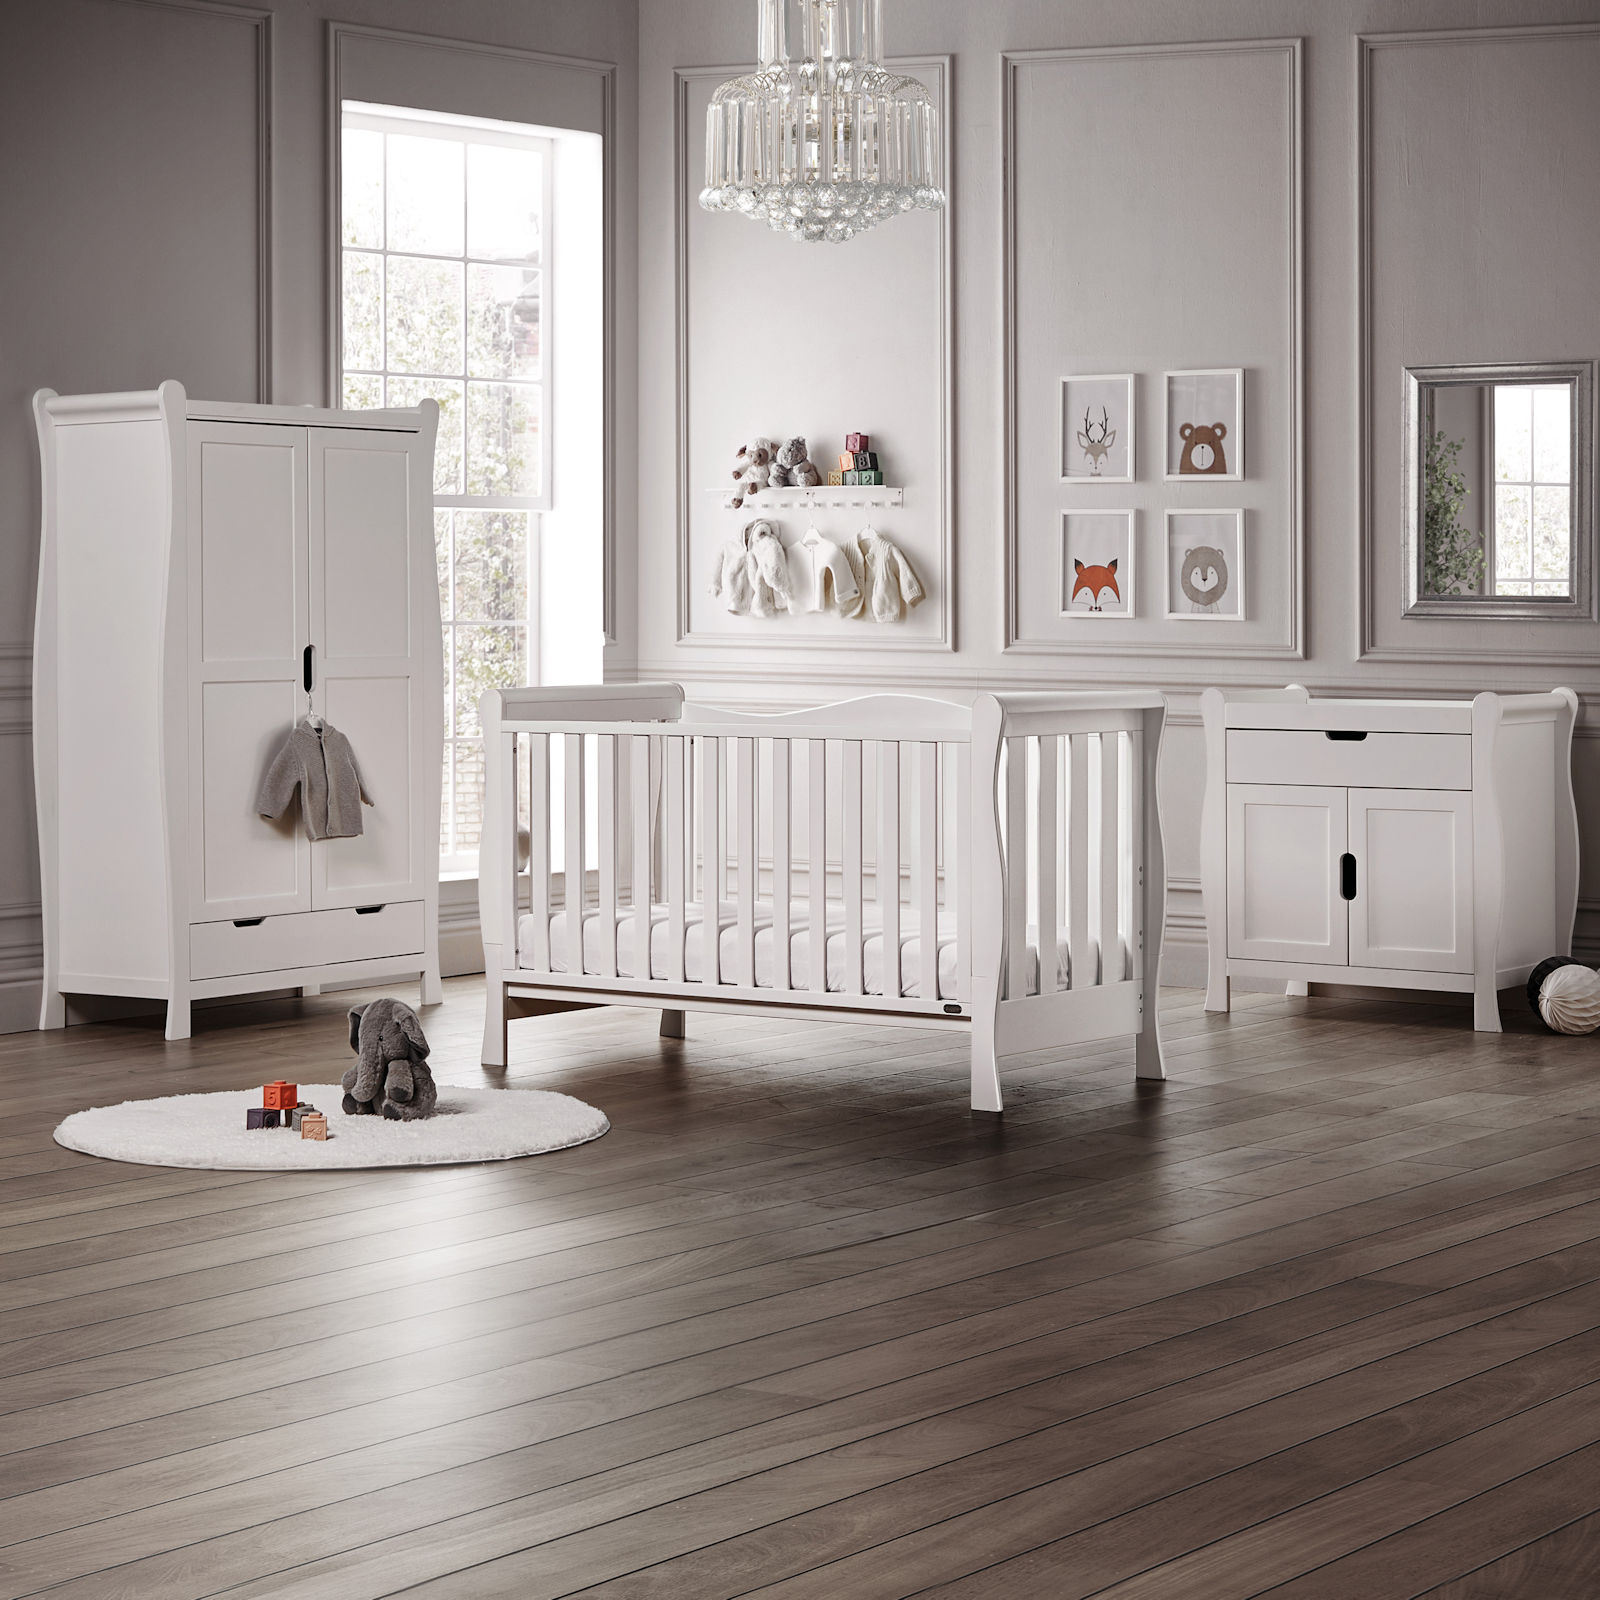 Puggle Prestbury Imperial Luxe Sleigh 4pc Nursery Furniture Set - White